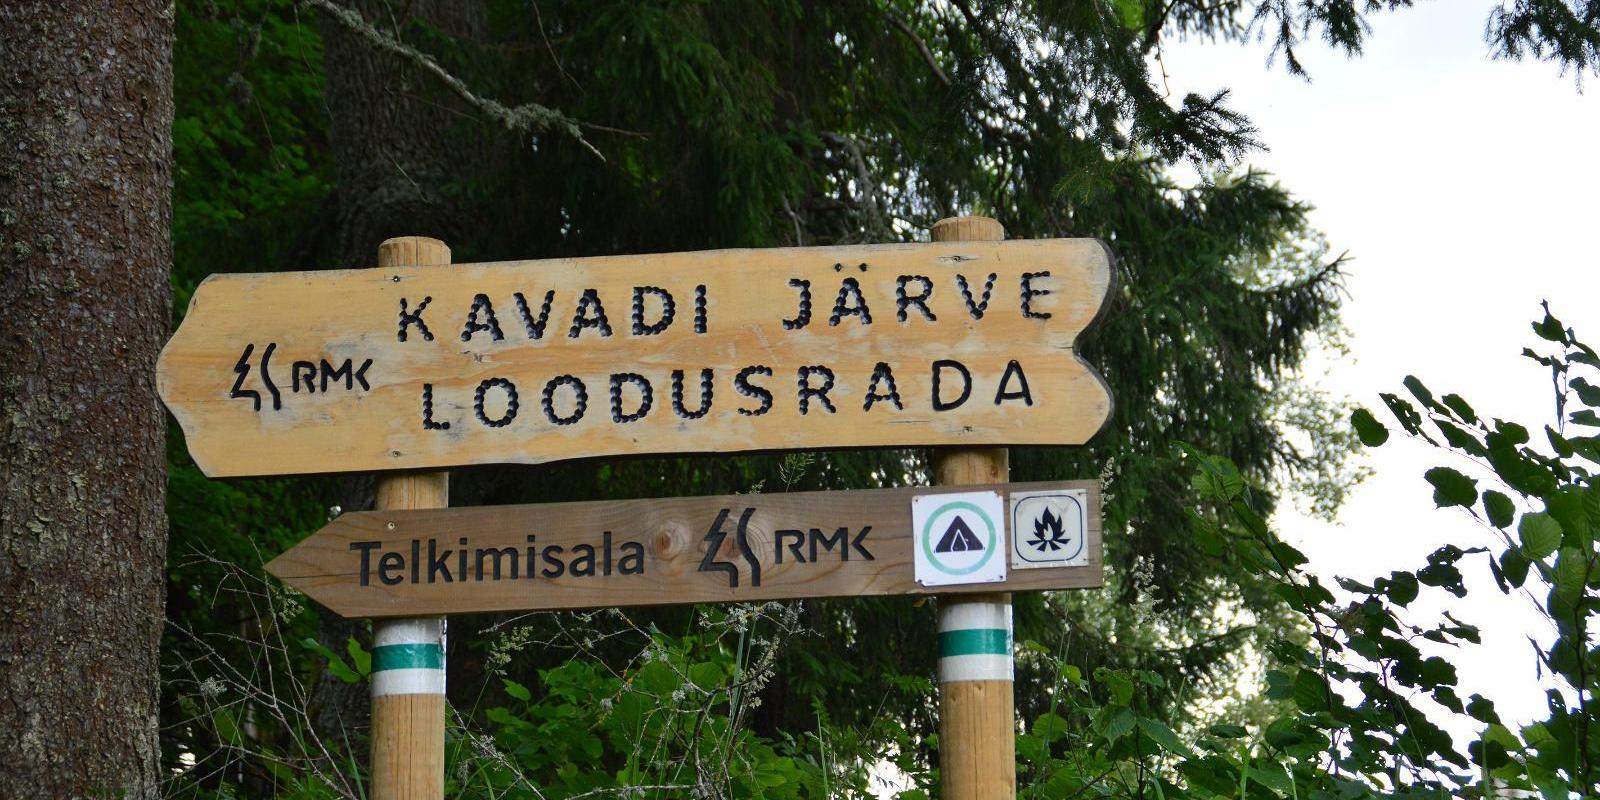 Hiking trail around Lake Kavadi